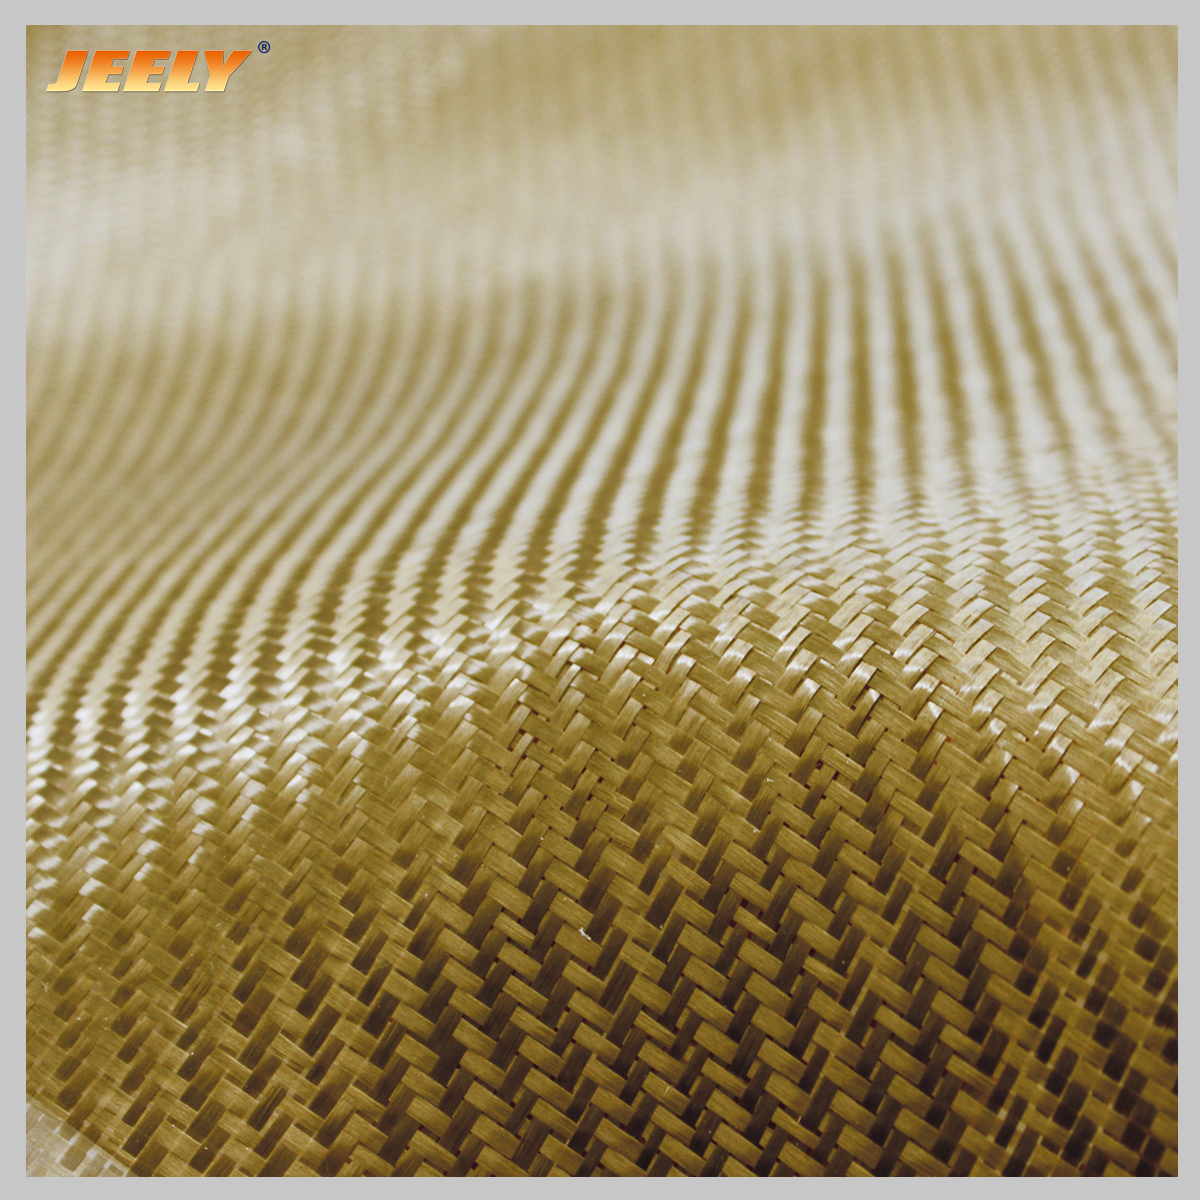 300g/m2 0.35mm Thickness Cloth Basalt Fiber Twill or Plain Fabric 1mx0.5m